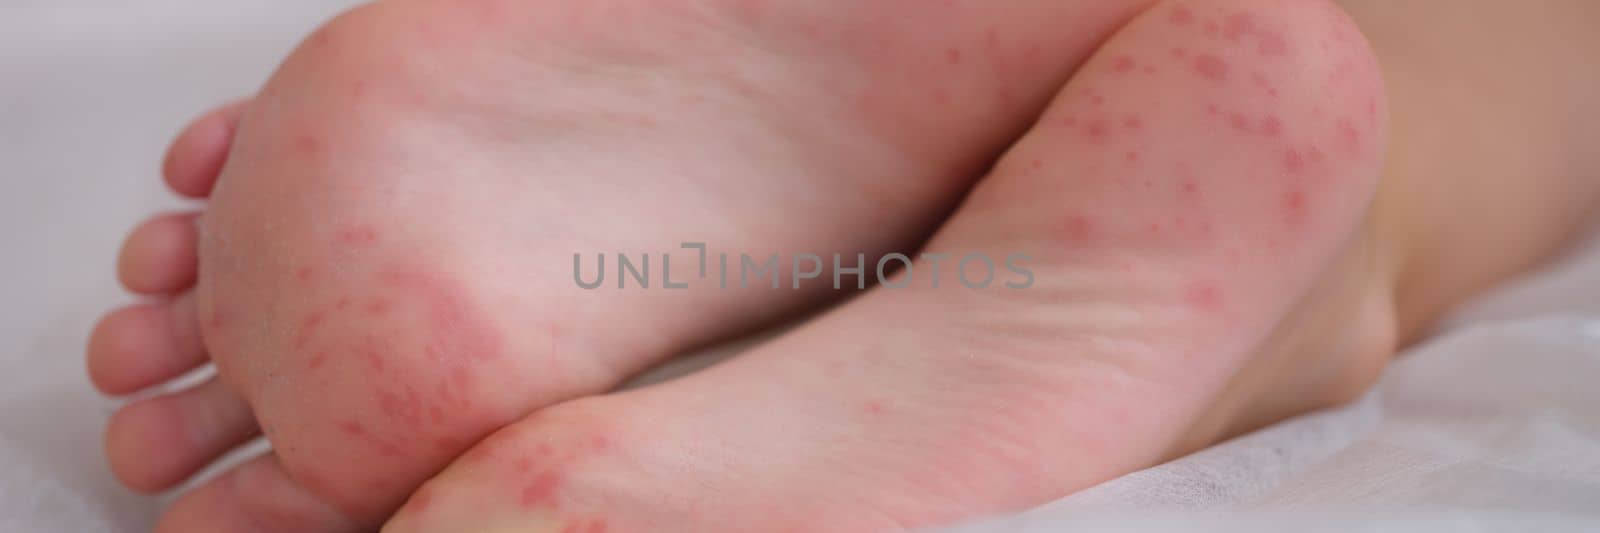 Children foot with dermatitis allergic rash closeup by kuprevich